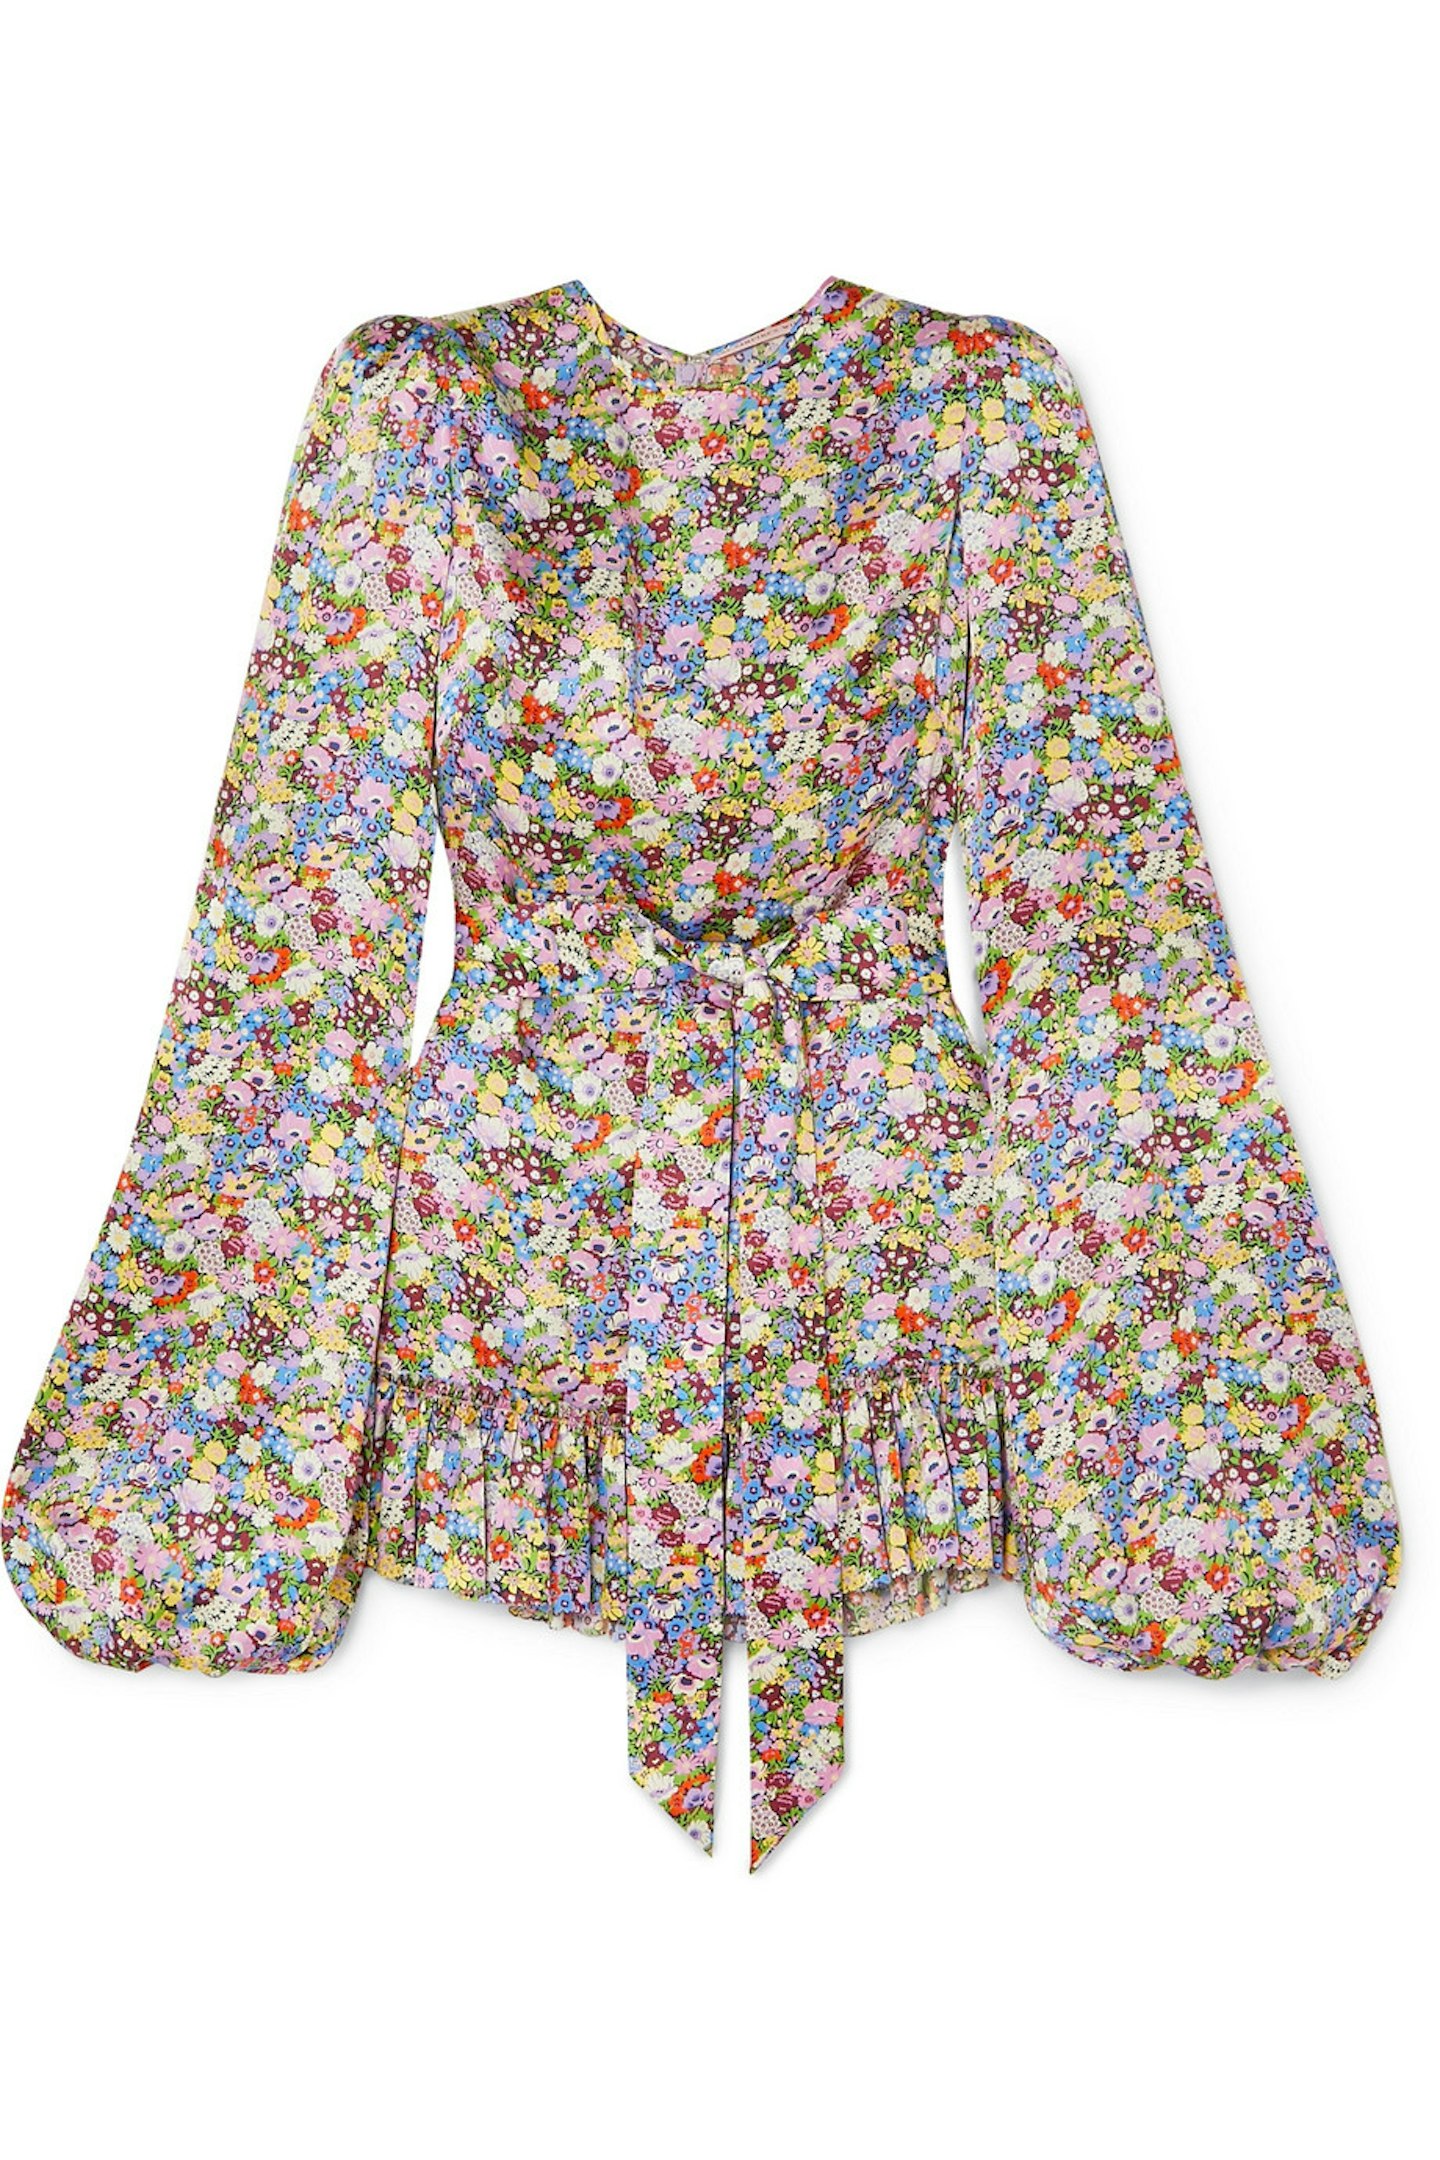 Short Floral Dress, £995